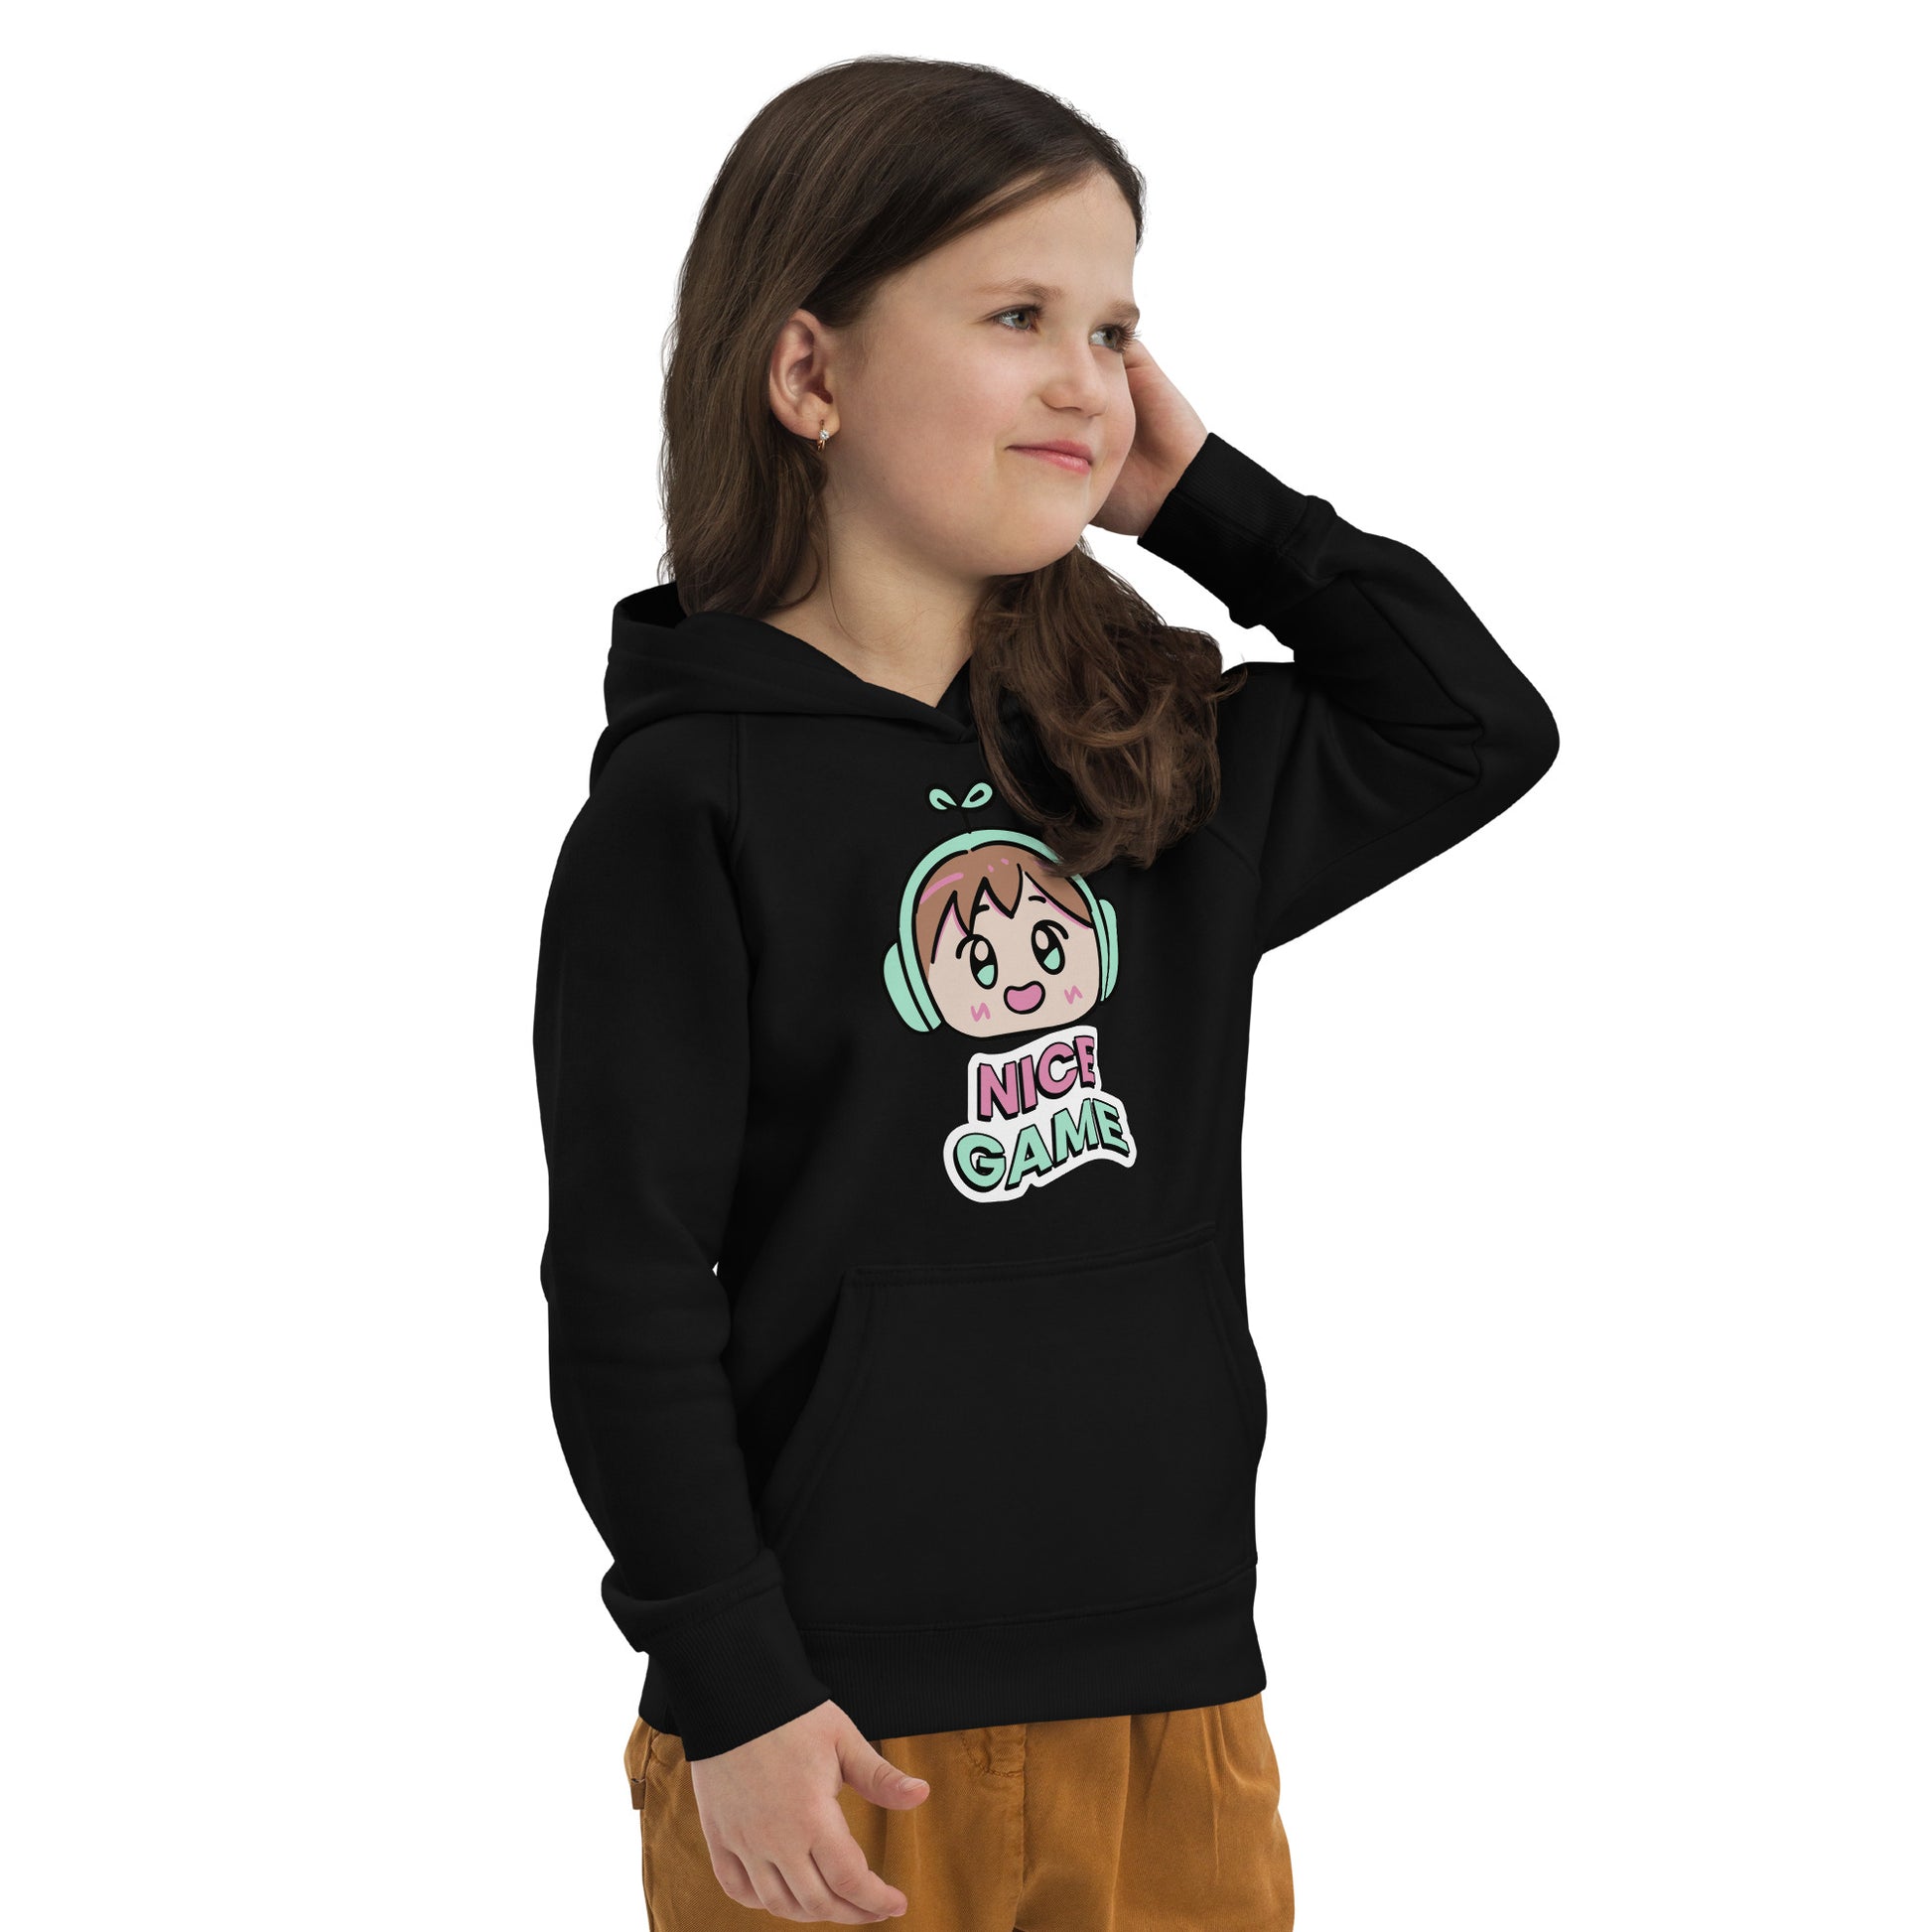 Nice Game - Kids eco hoodie - HobbyMeFree